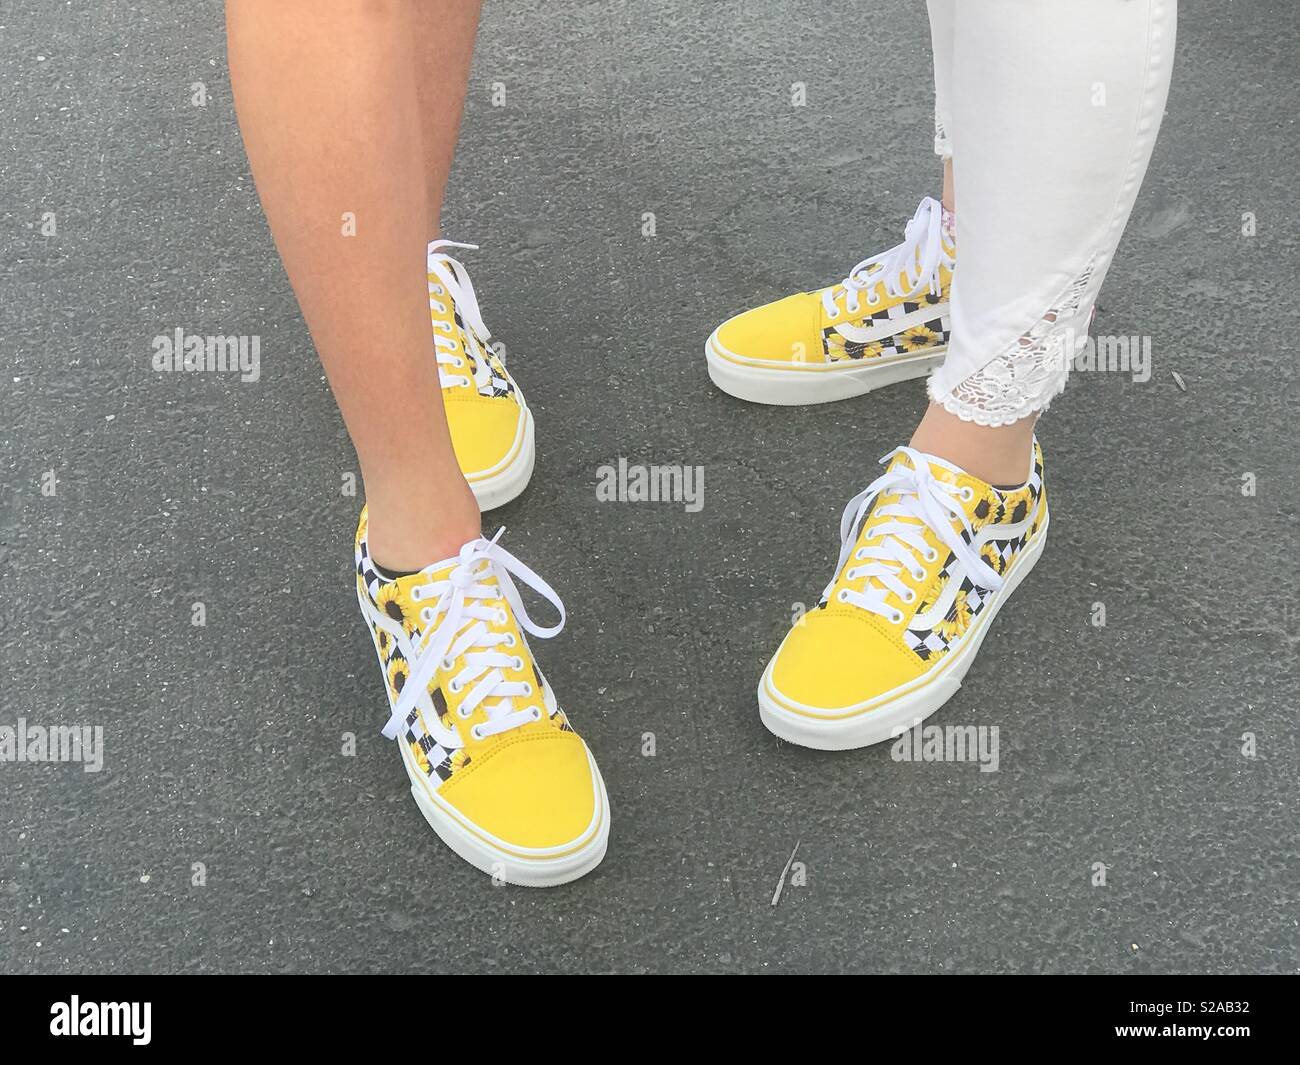 Teenage migliore amico indossando scarpe per il primo giorno di scuola indossando scarpe di colore giallo con girasoli su di essi. Foto Stock